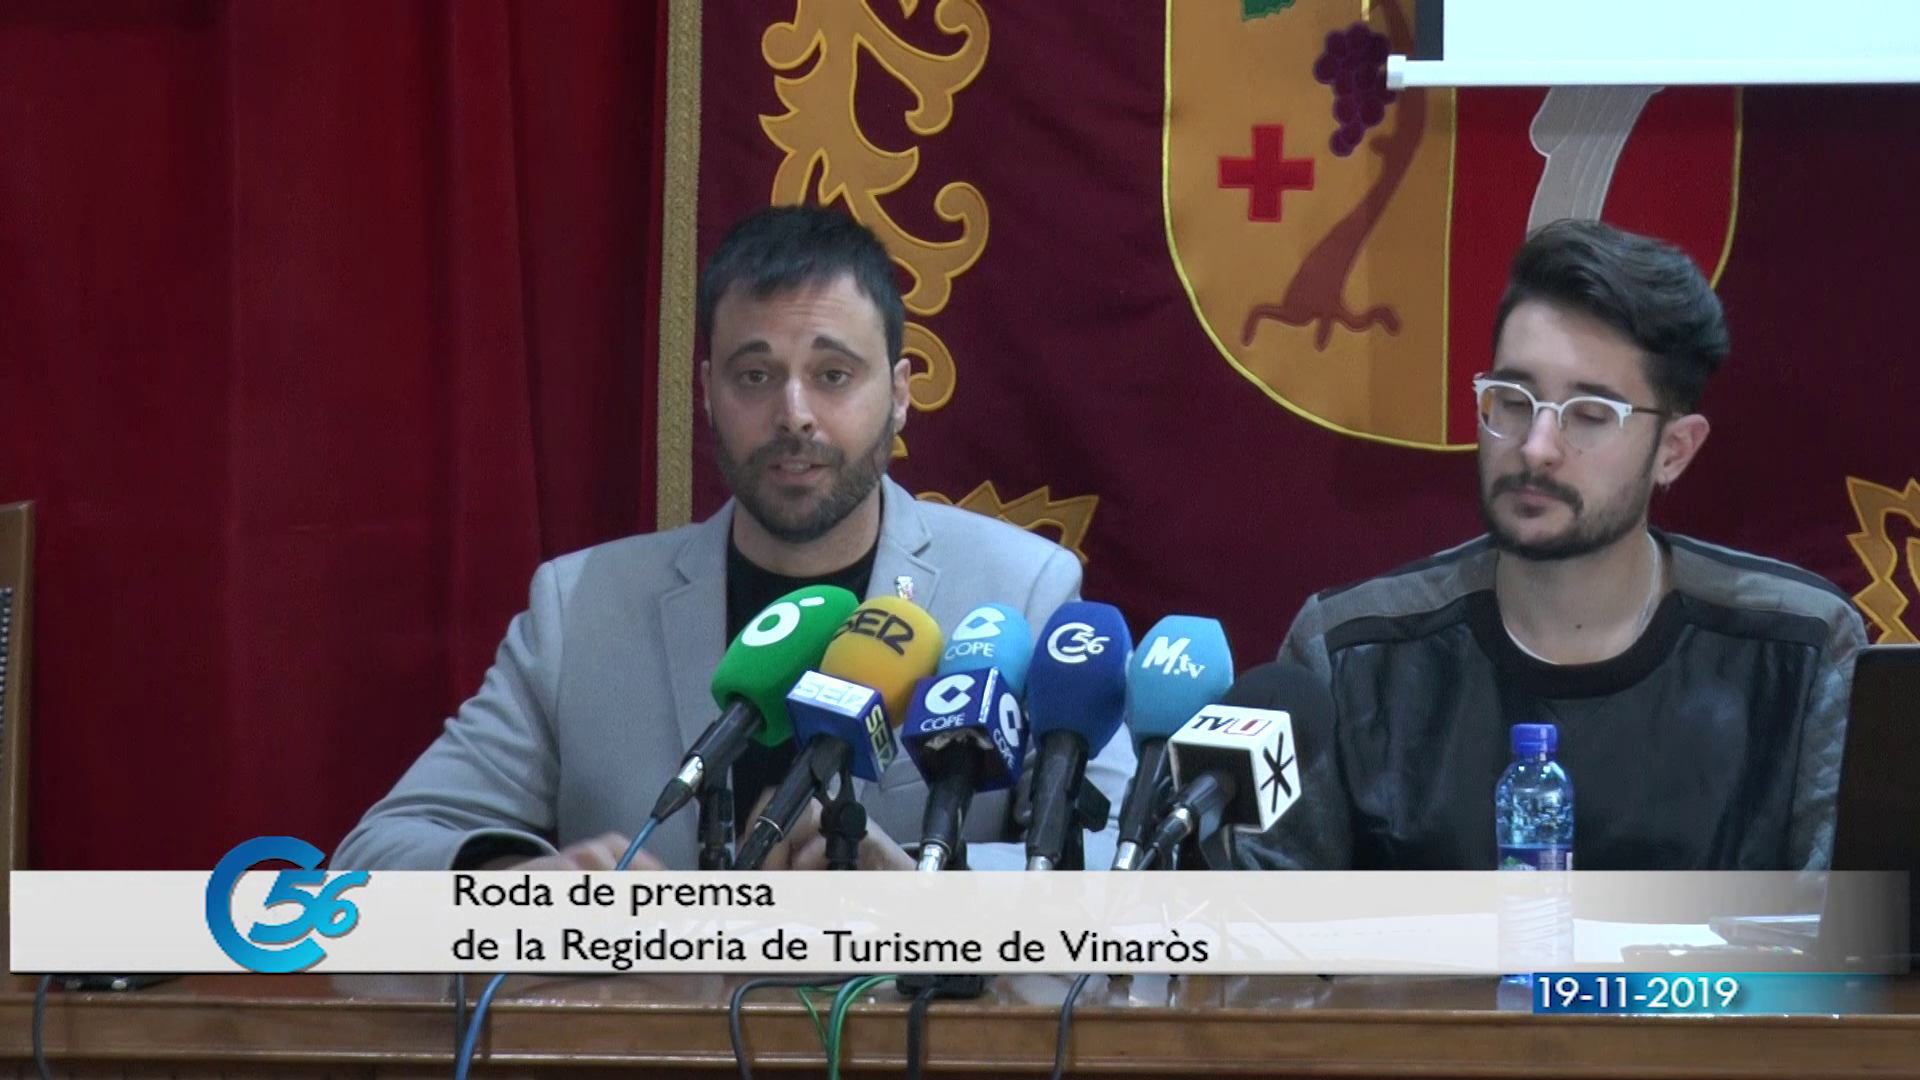 Vinaròs renovarà la Festa del Llagostí per convertir la ciutat en un referent gastronòmic